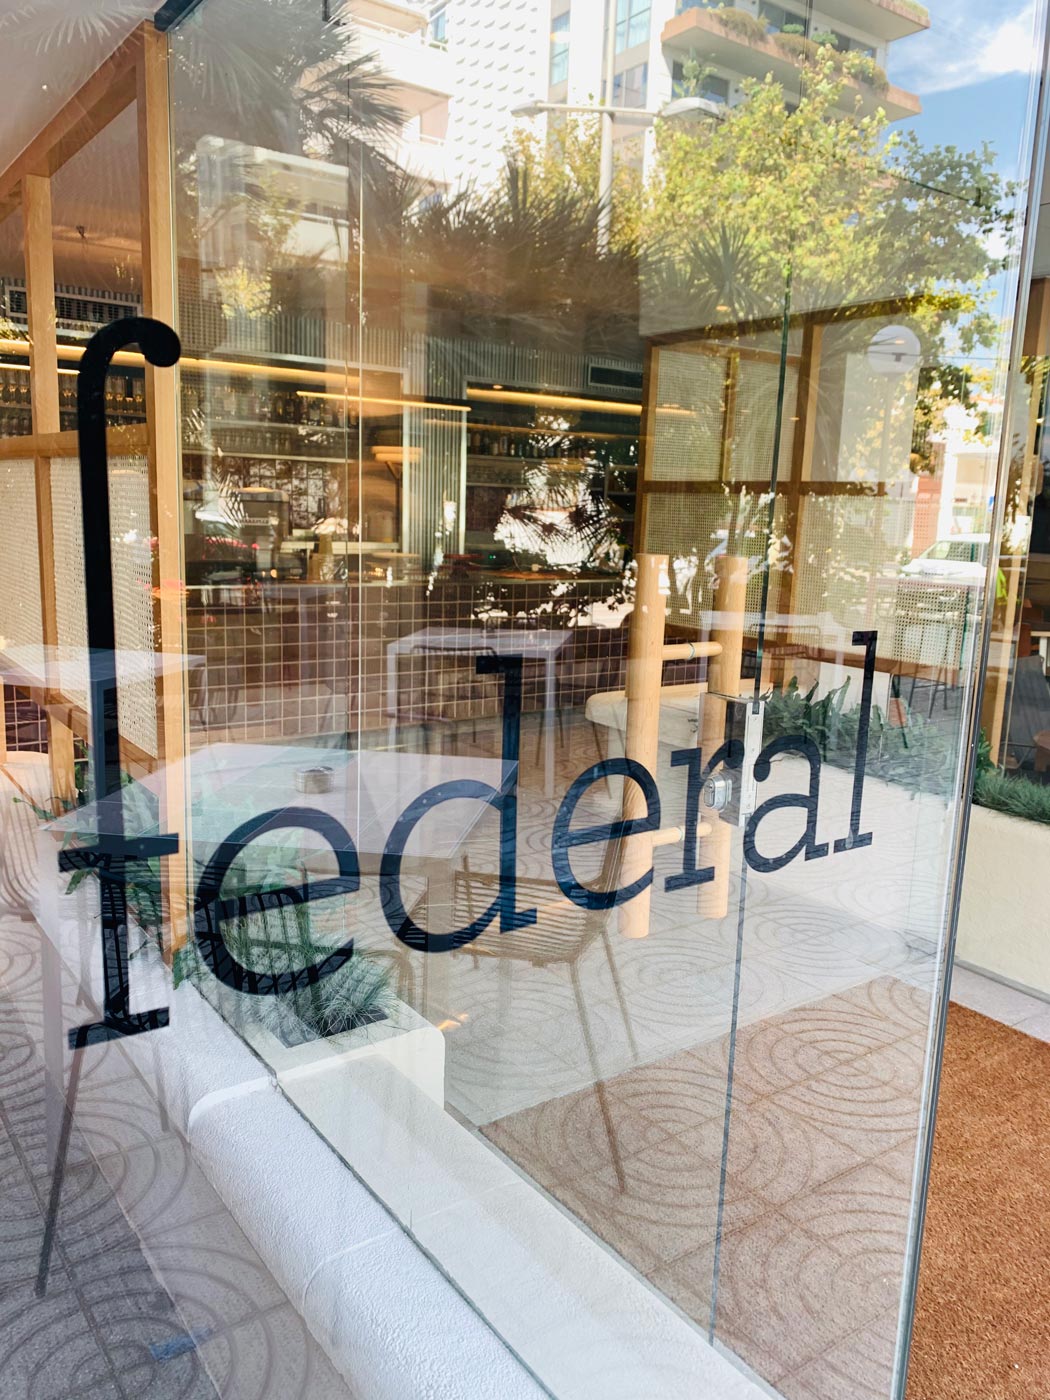 federal café